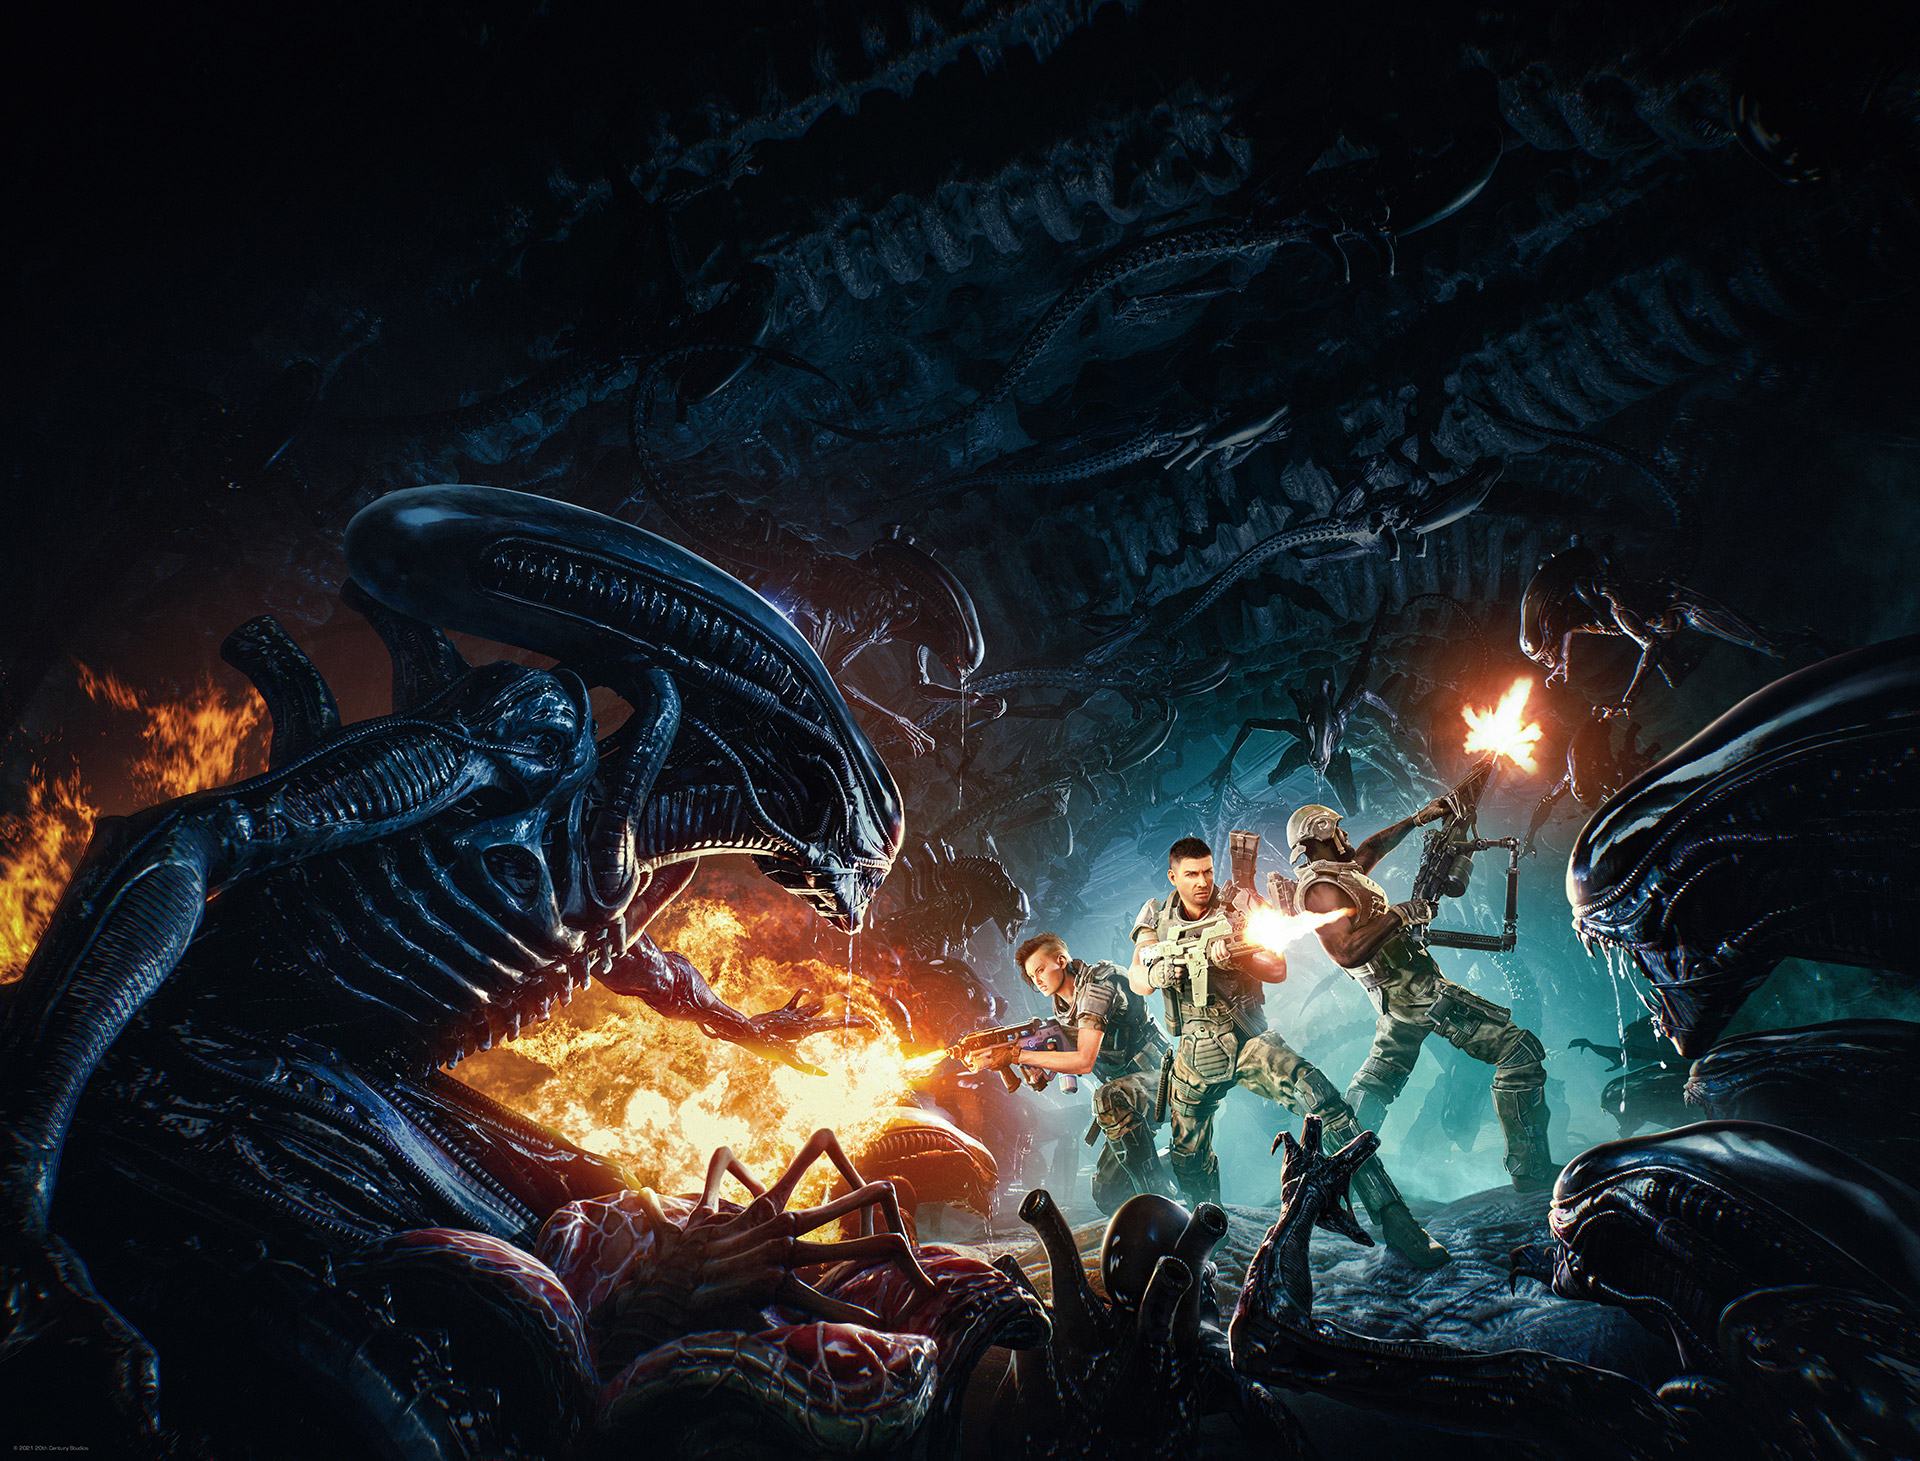 協力型サバイバルシューター Aliens Fireteam 発売決定 映画 エイリアン 3部作の23年後が舞台 Game Watch